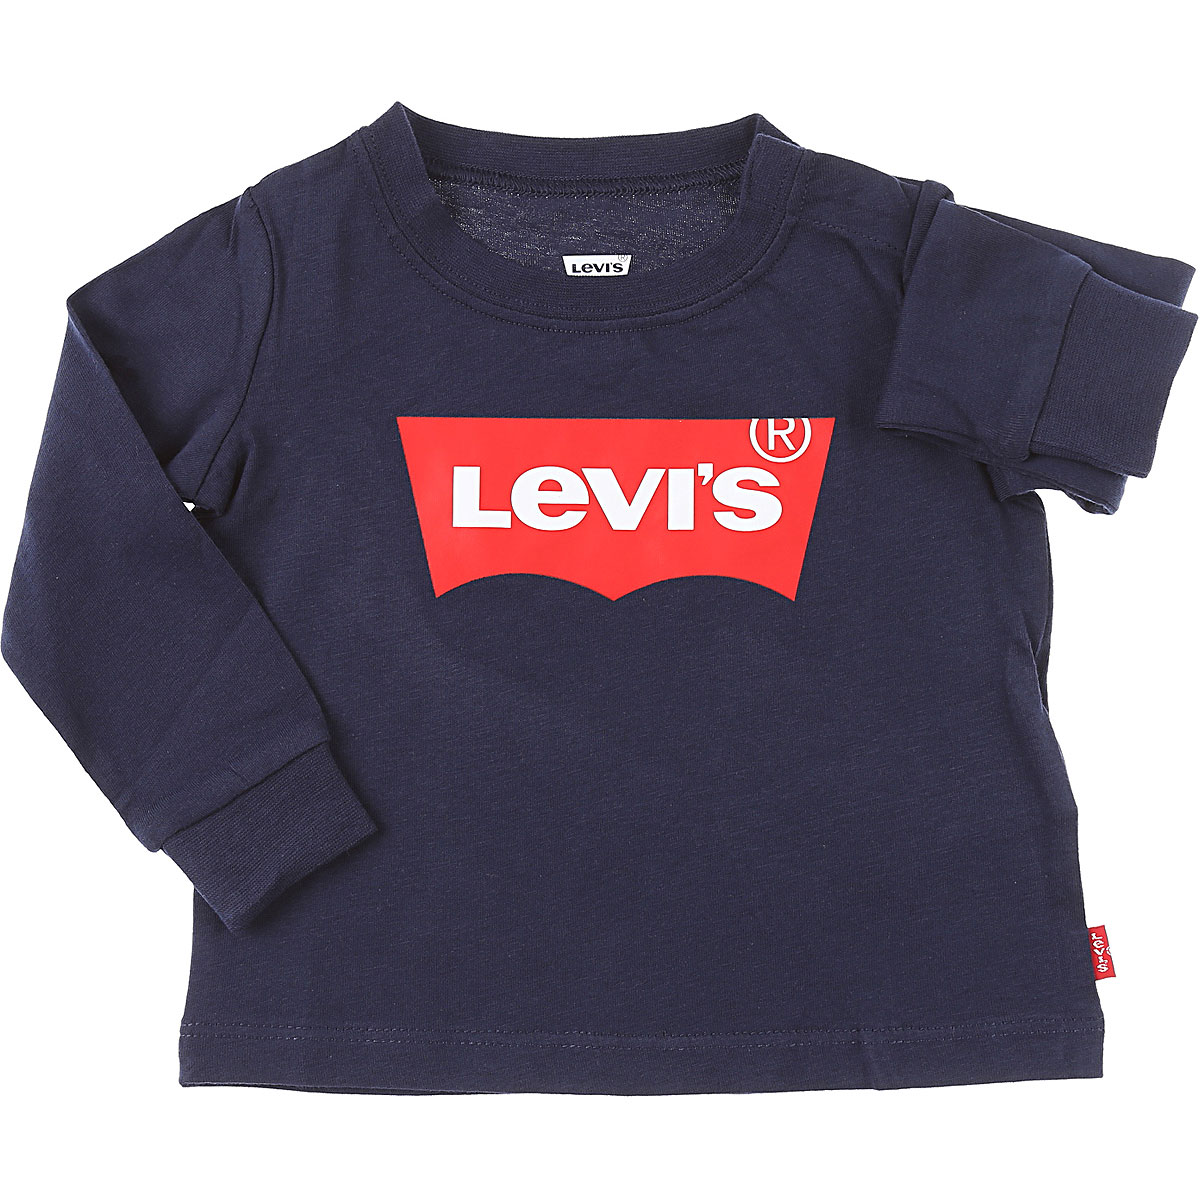 Levis Baby T-Shirt für Jungen Günstig im Sale, Marine blau, Baumwolle, 2017, 12 M 2Y 6M 9M